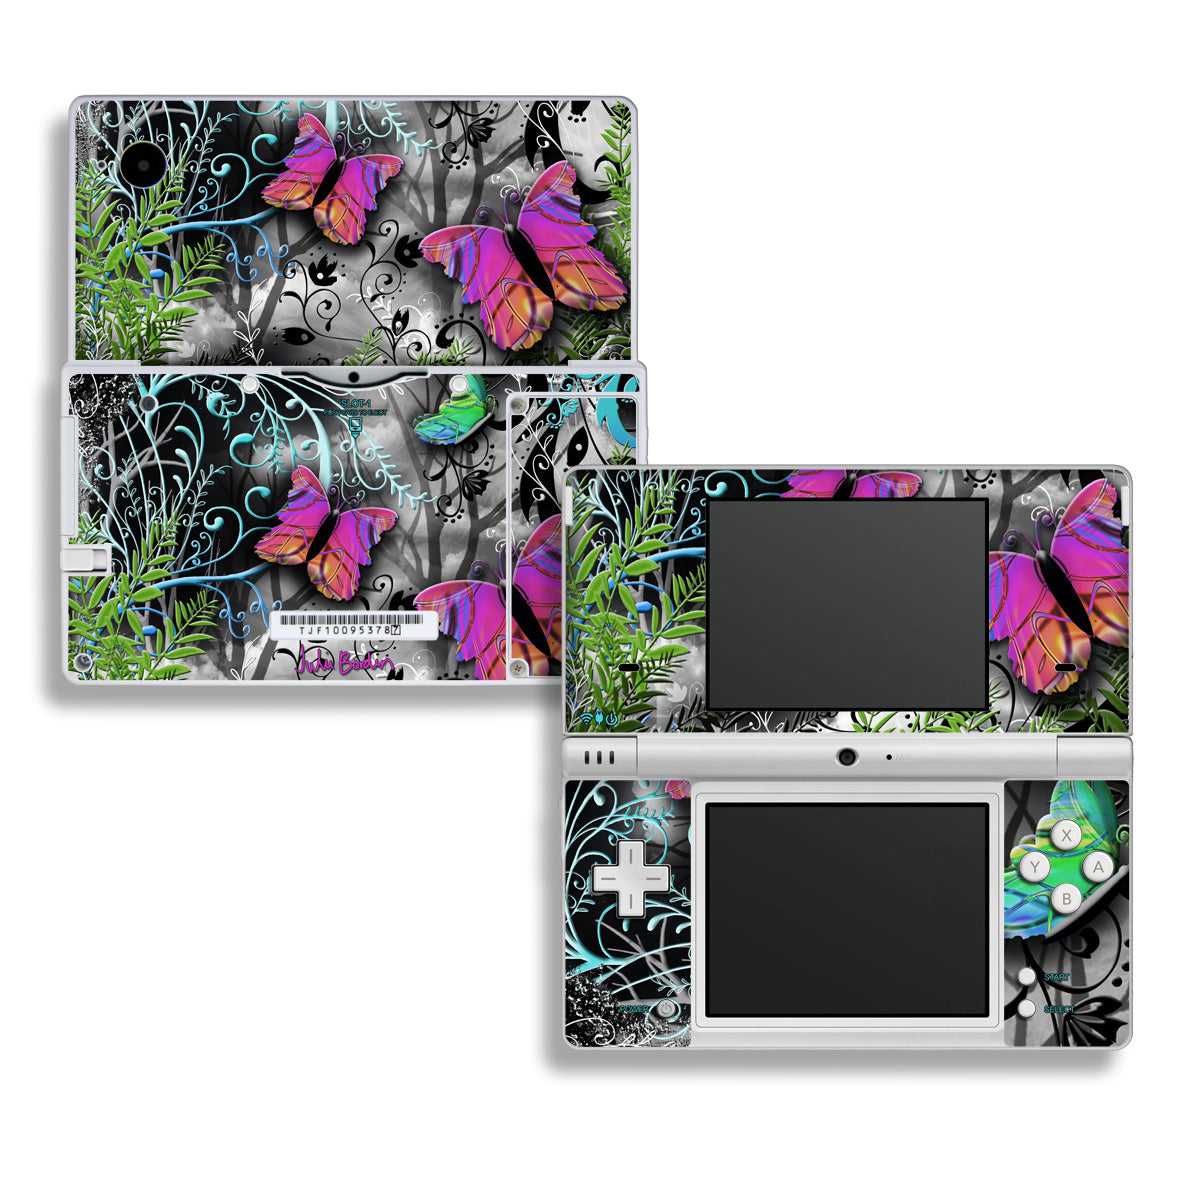 Goth Forest - Nintendo DSi Skin